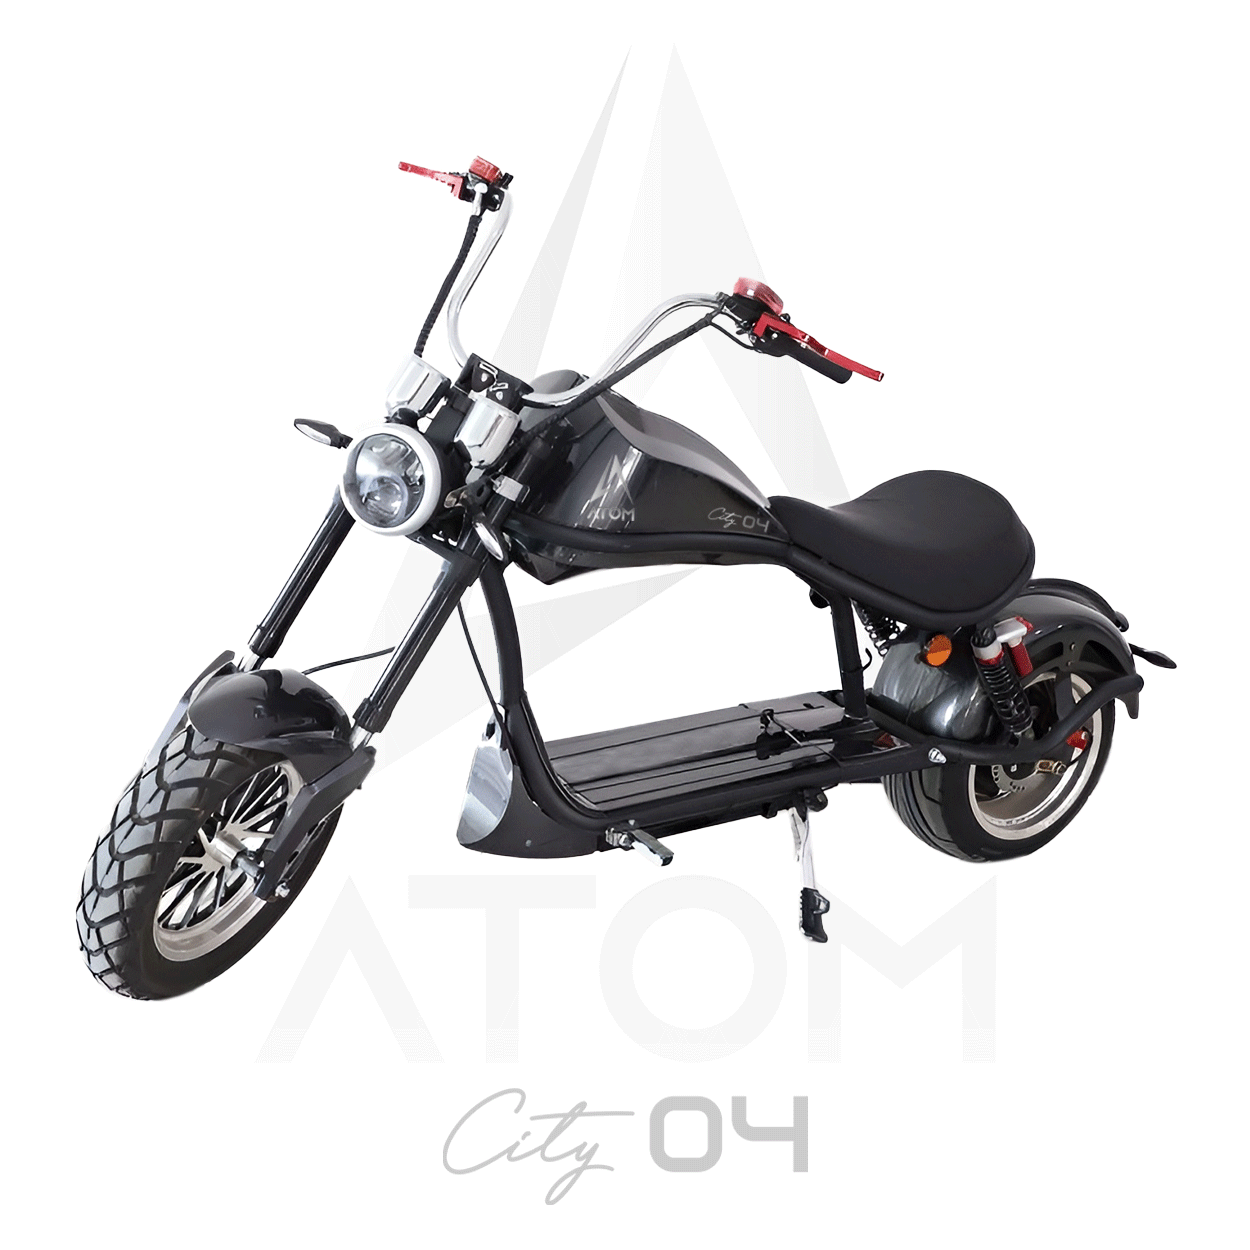 Scooter électrique, Atom City 04 | 2000 W | 50 cm³ - Atom Motors